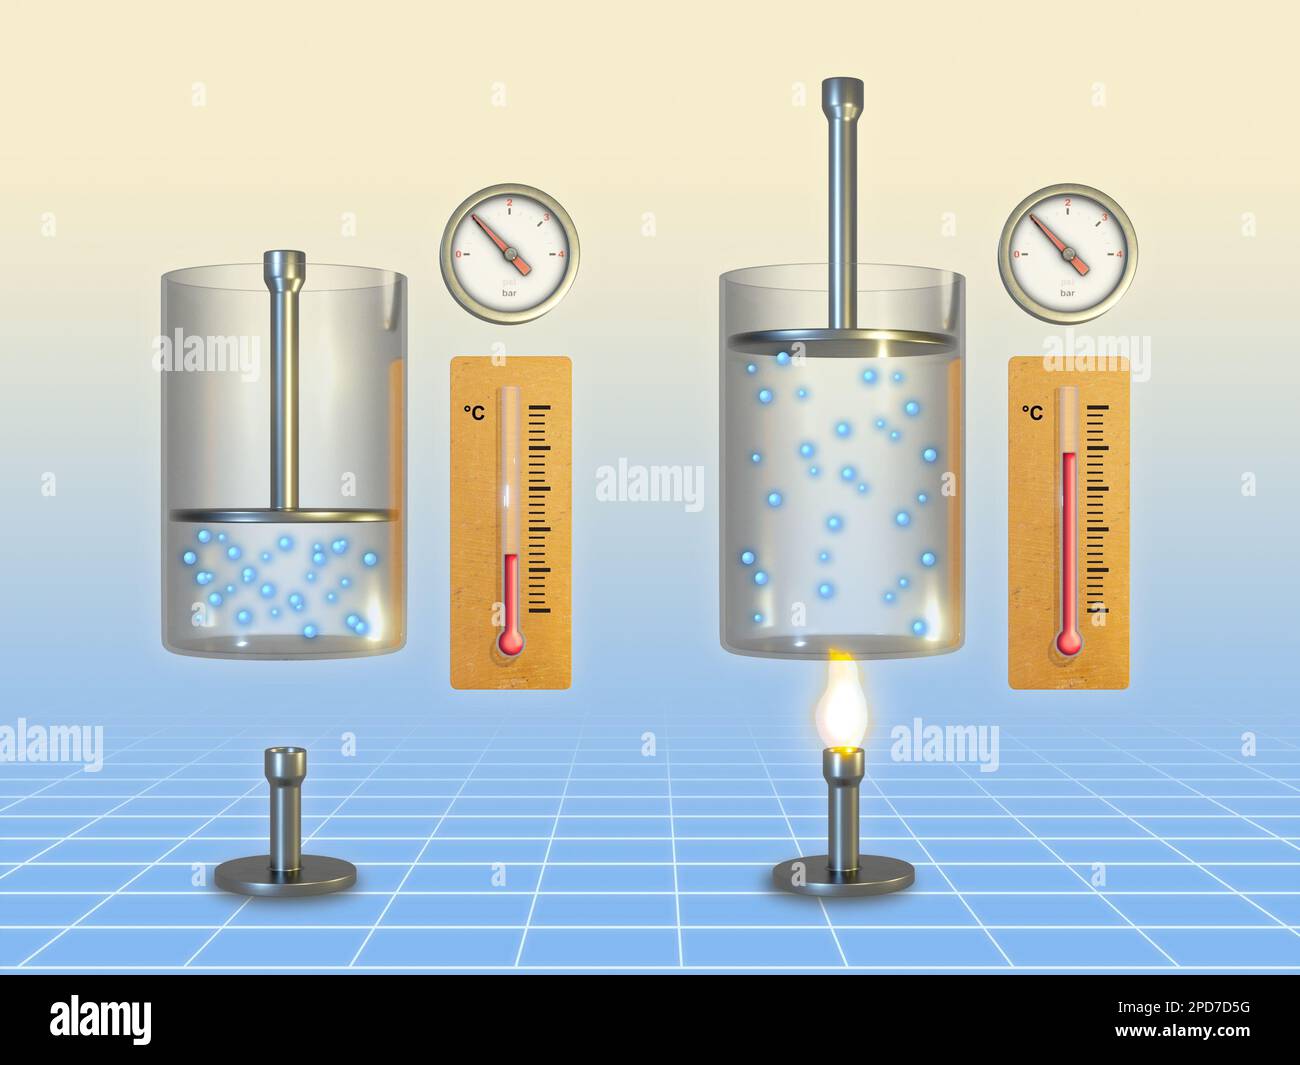 La loi de Charles : comment le gaz a tendance à se développer lorsqu'il est  chauffé. Illustration numérique, rendu 3D Photo Stock - Alamy